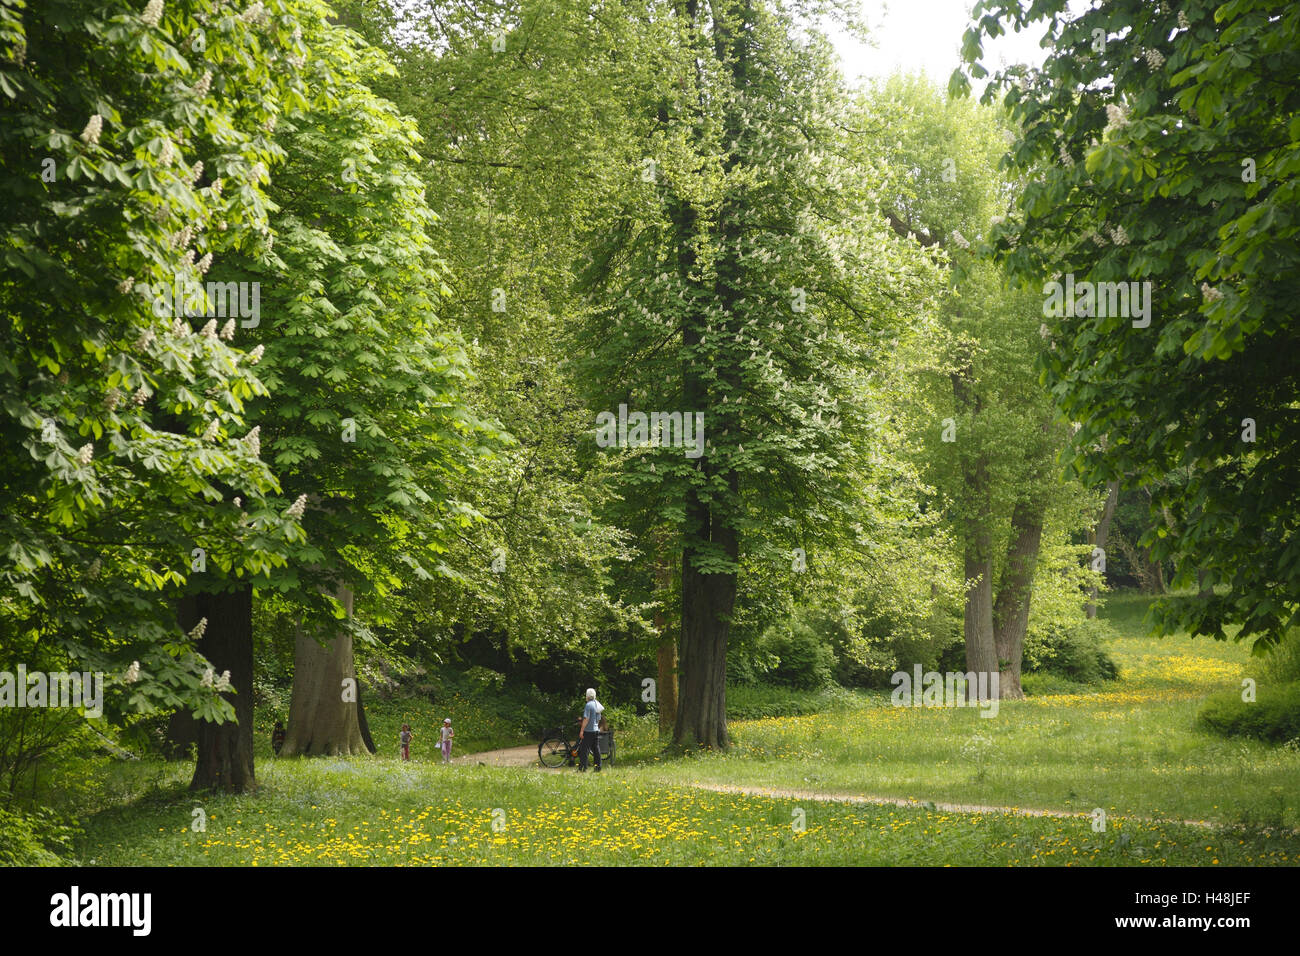 Germany, Schleswig - Holstein, Eutin, trees in the lock garden, Stock Photo